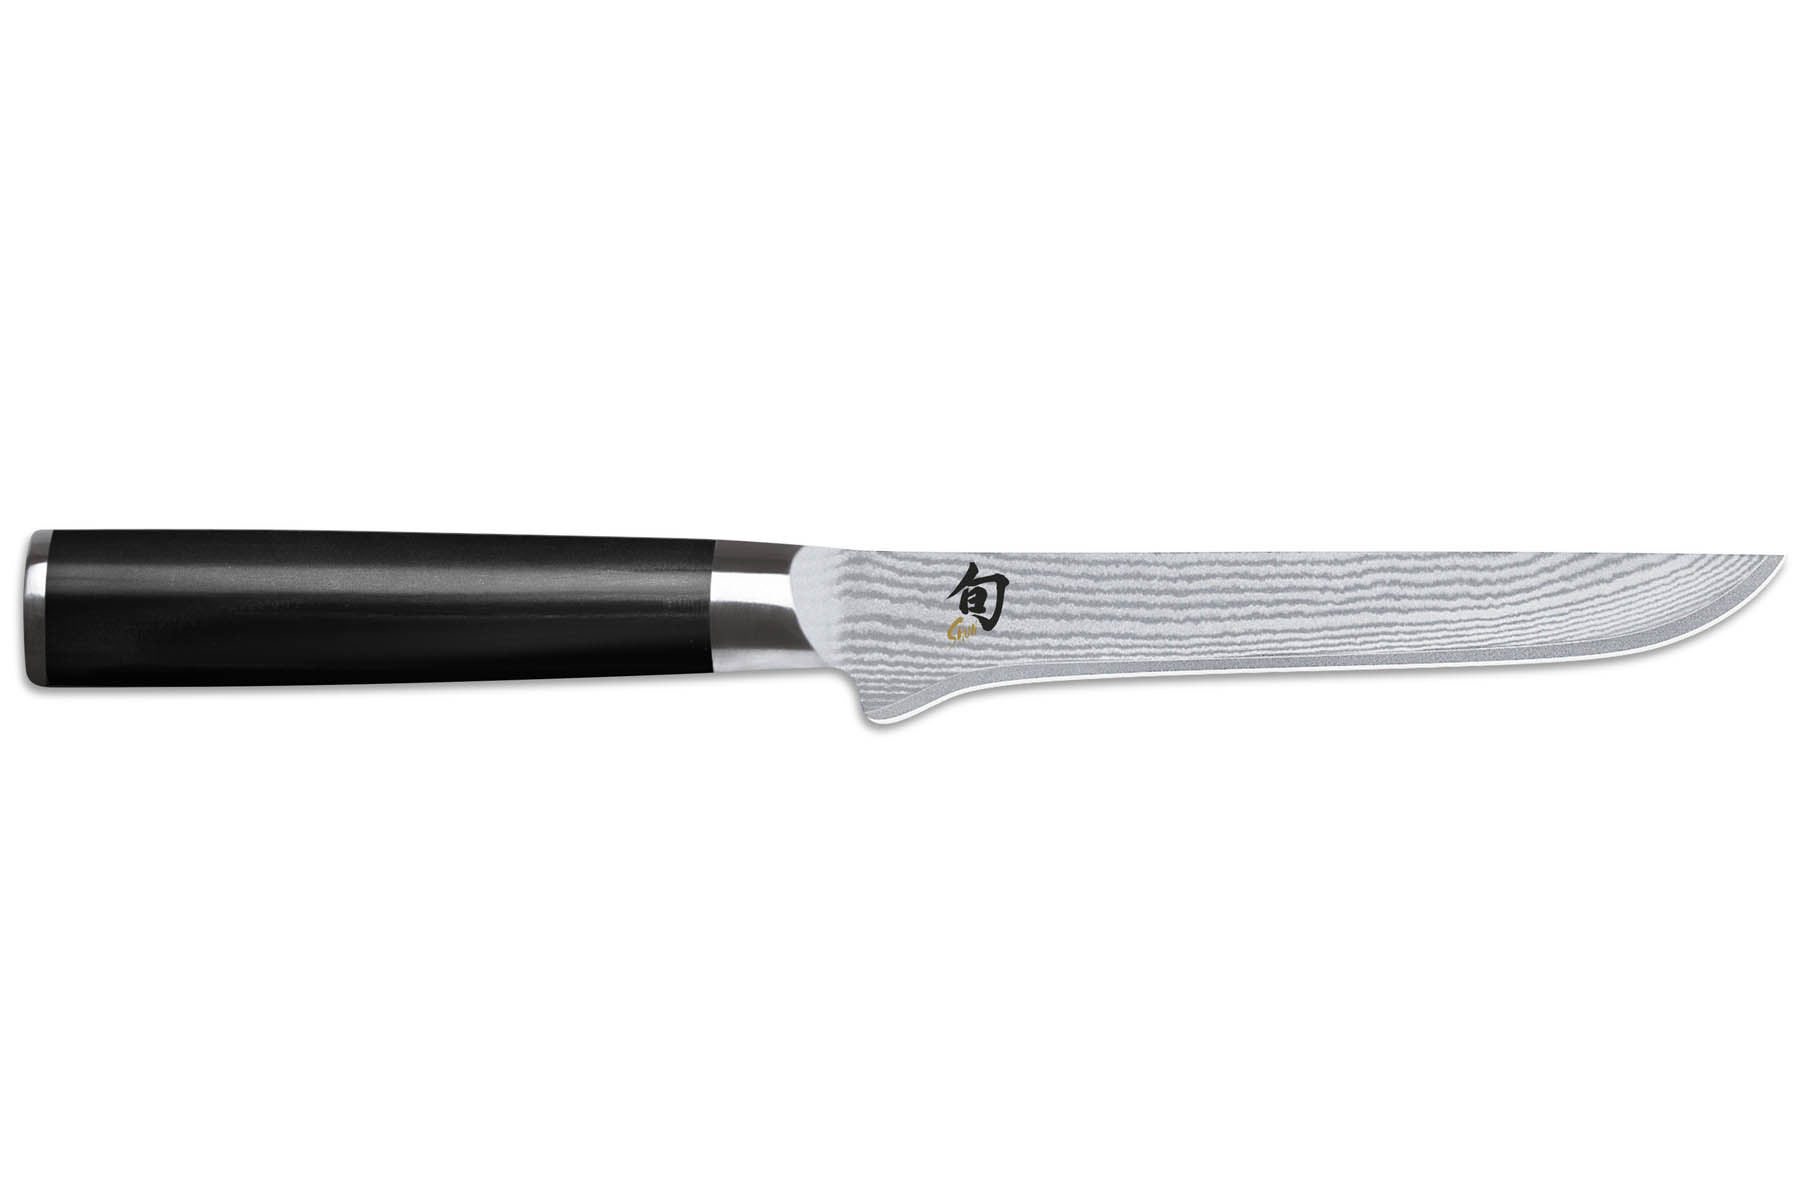 Couteau japonais Kai Shun Classic - dsosseur 15 cm